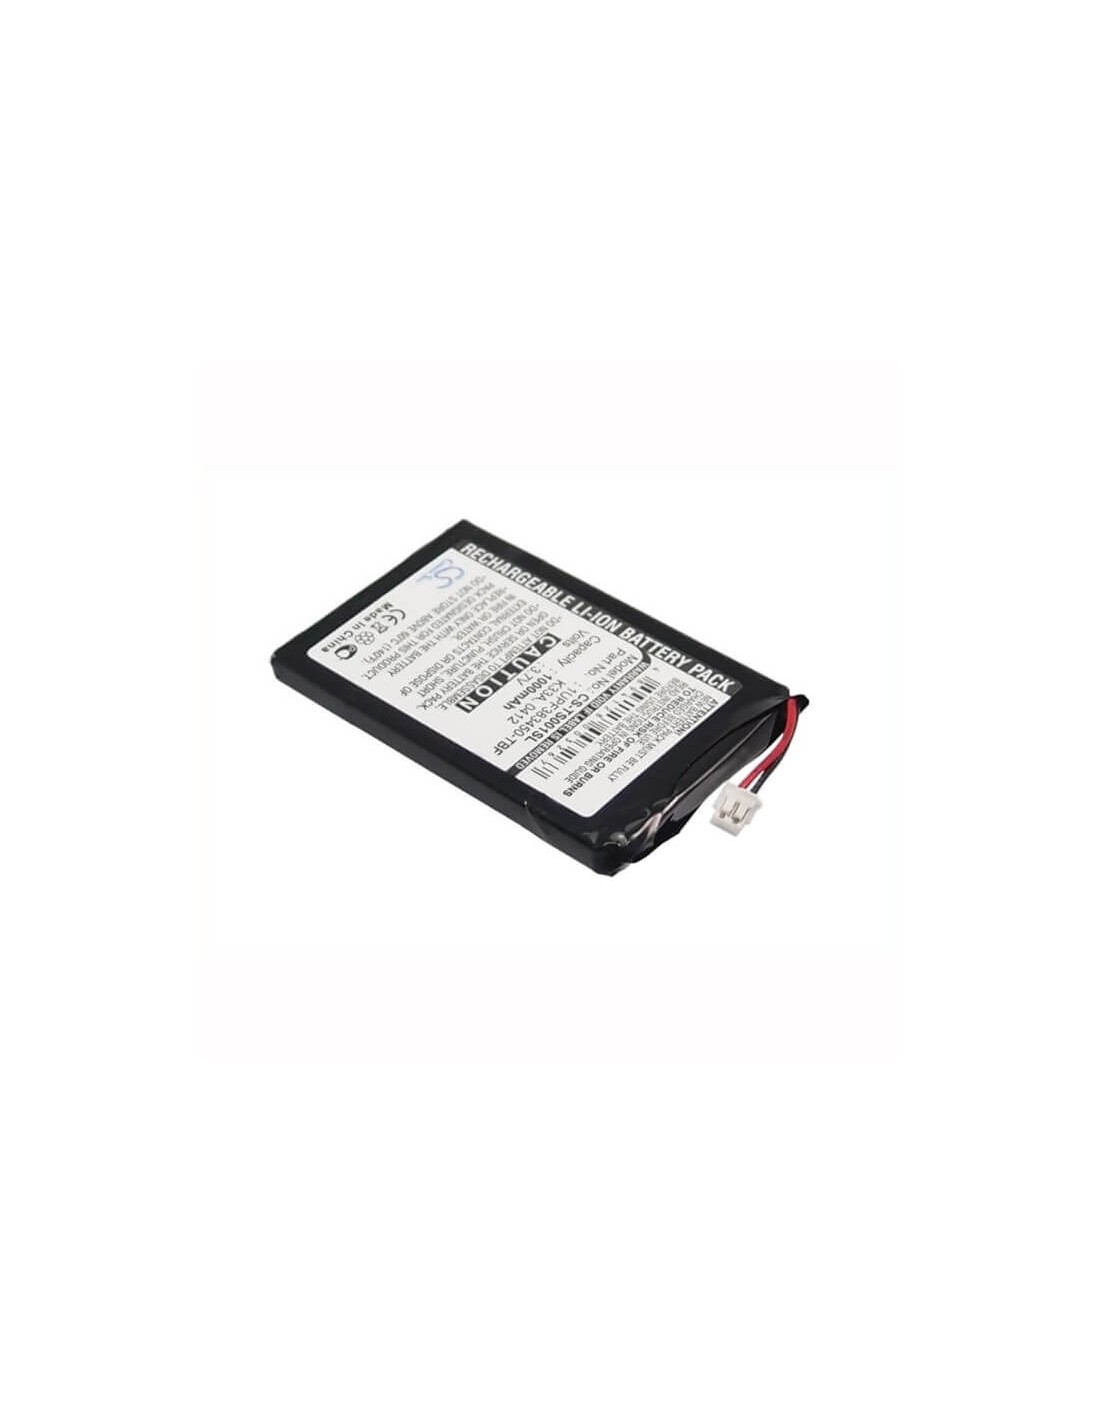 Battery for Toshiba Gigabeat Mes30vw, Gigabeat Mes30v, Gigabeat Mes60v 3.7V, 1000mAh - 3.70Wh